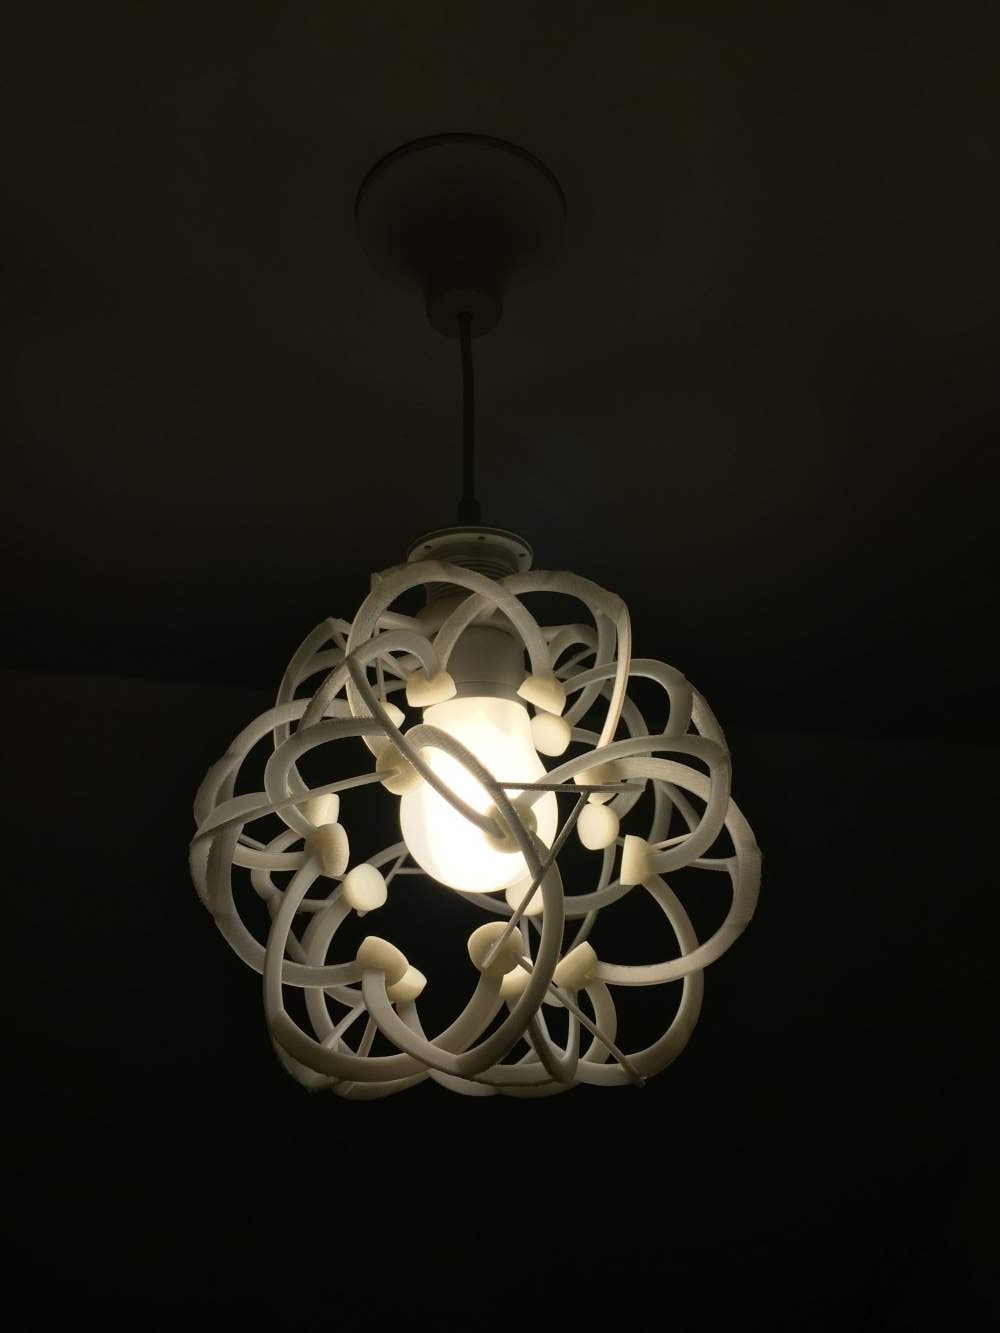 Lamp shade